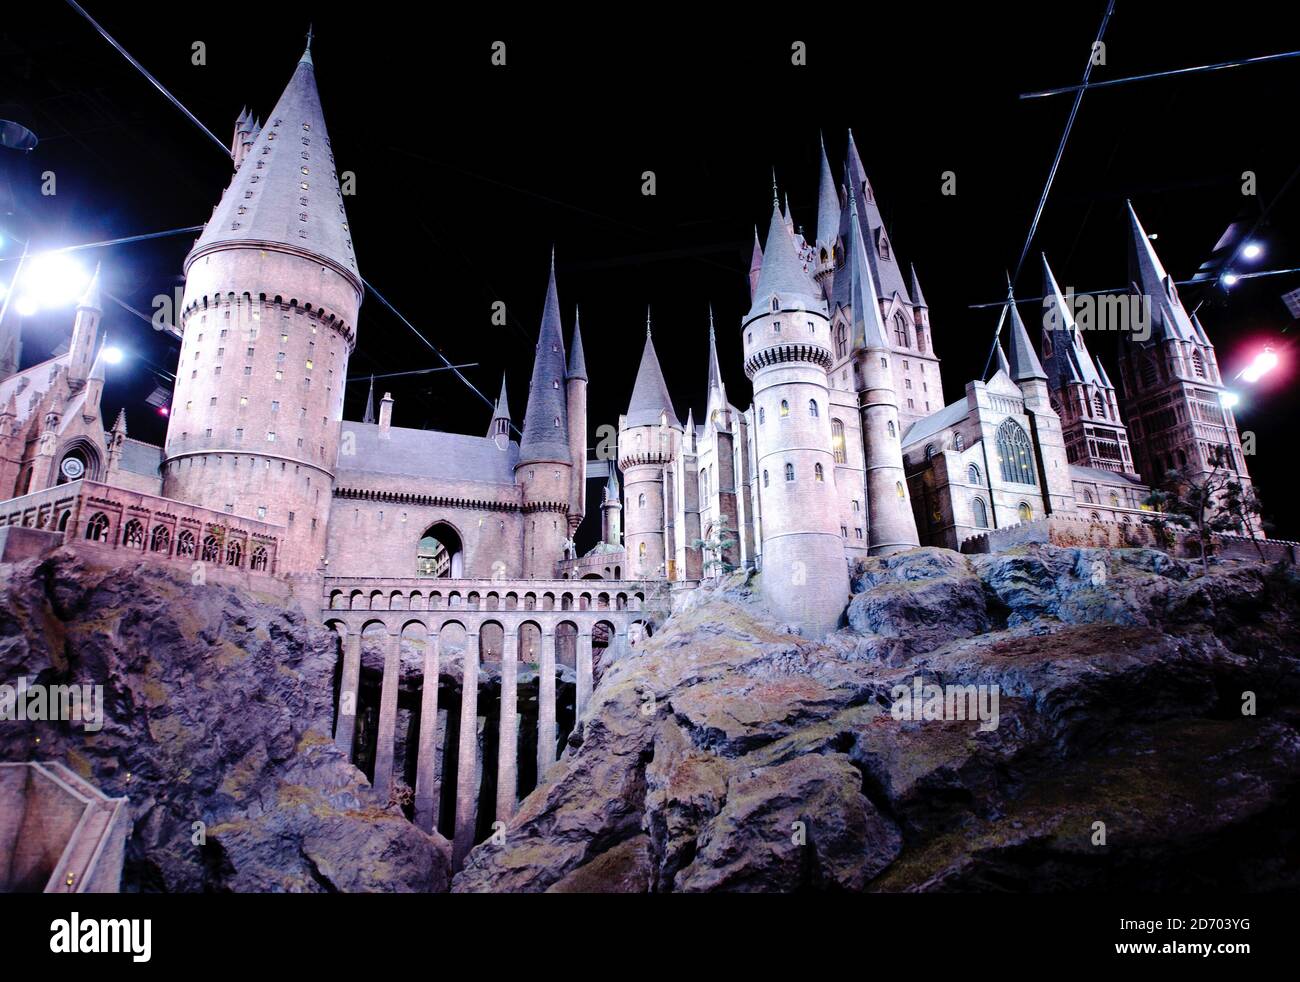 Il modello in scala 1:24 di Hogwarts fatto a mano, che è stato usato nelle riprese delle 7 pellicole di Harry Potter. Il modello è esposto al Warner Bros Studio Tour London - The Making of Harry Potter, che apre a Hertfordshire il 31 marzo. Foto Stock